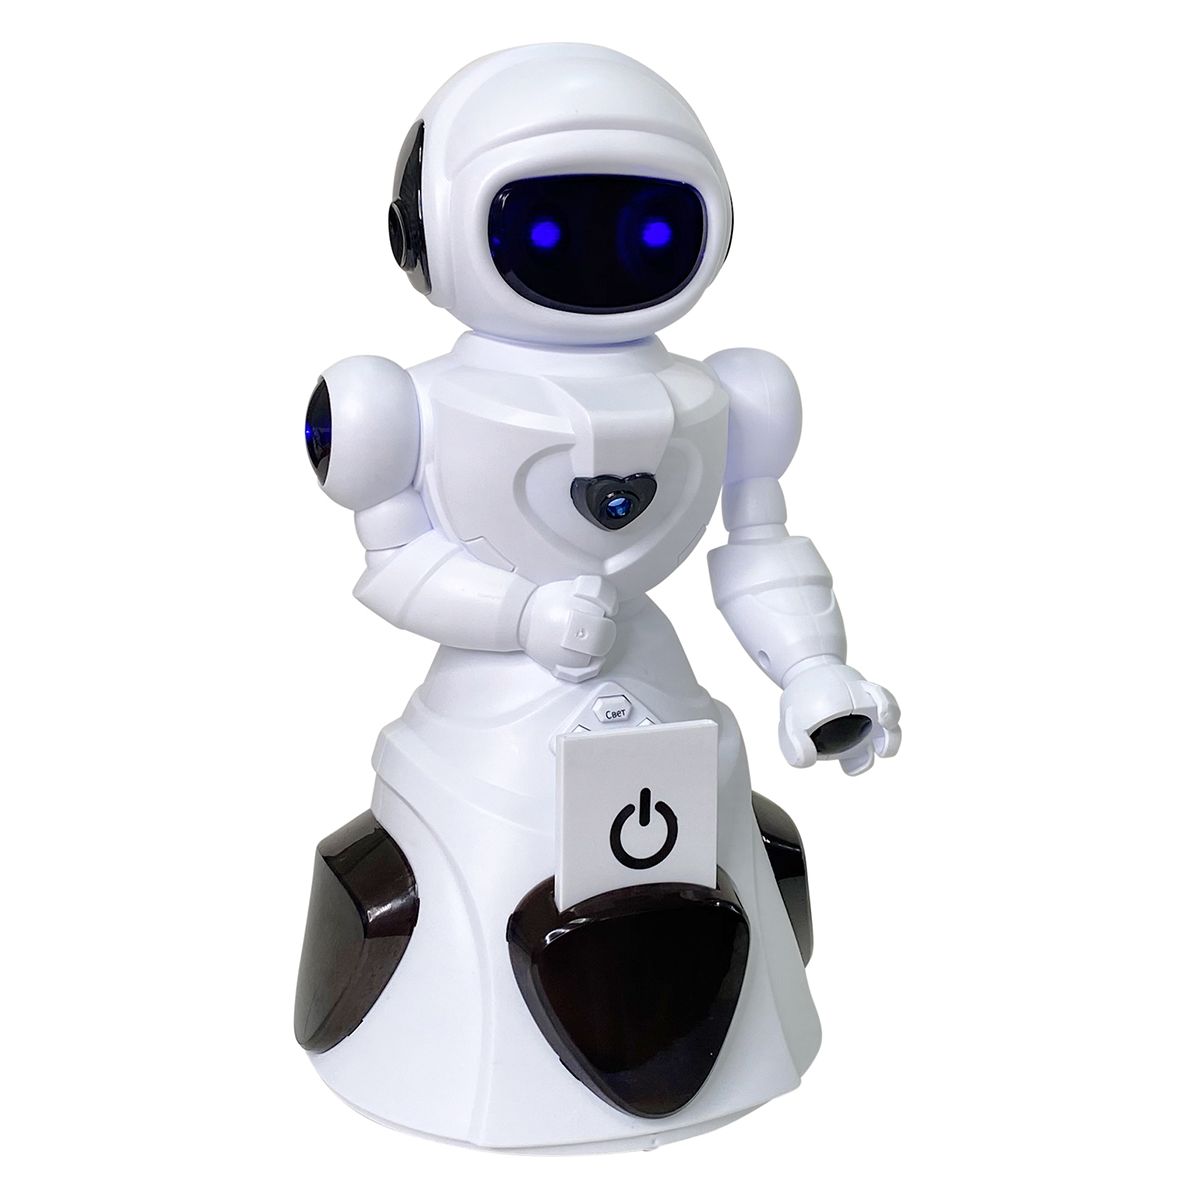 Интерактивный робот Нордпласт белый/черный 9/0062 интерактивный робот silverlit покибот белый с зеленым